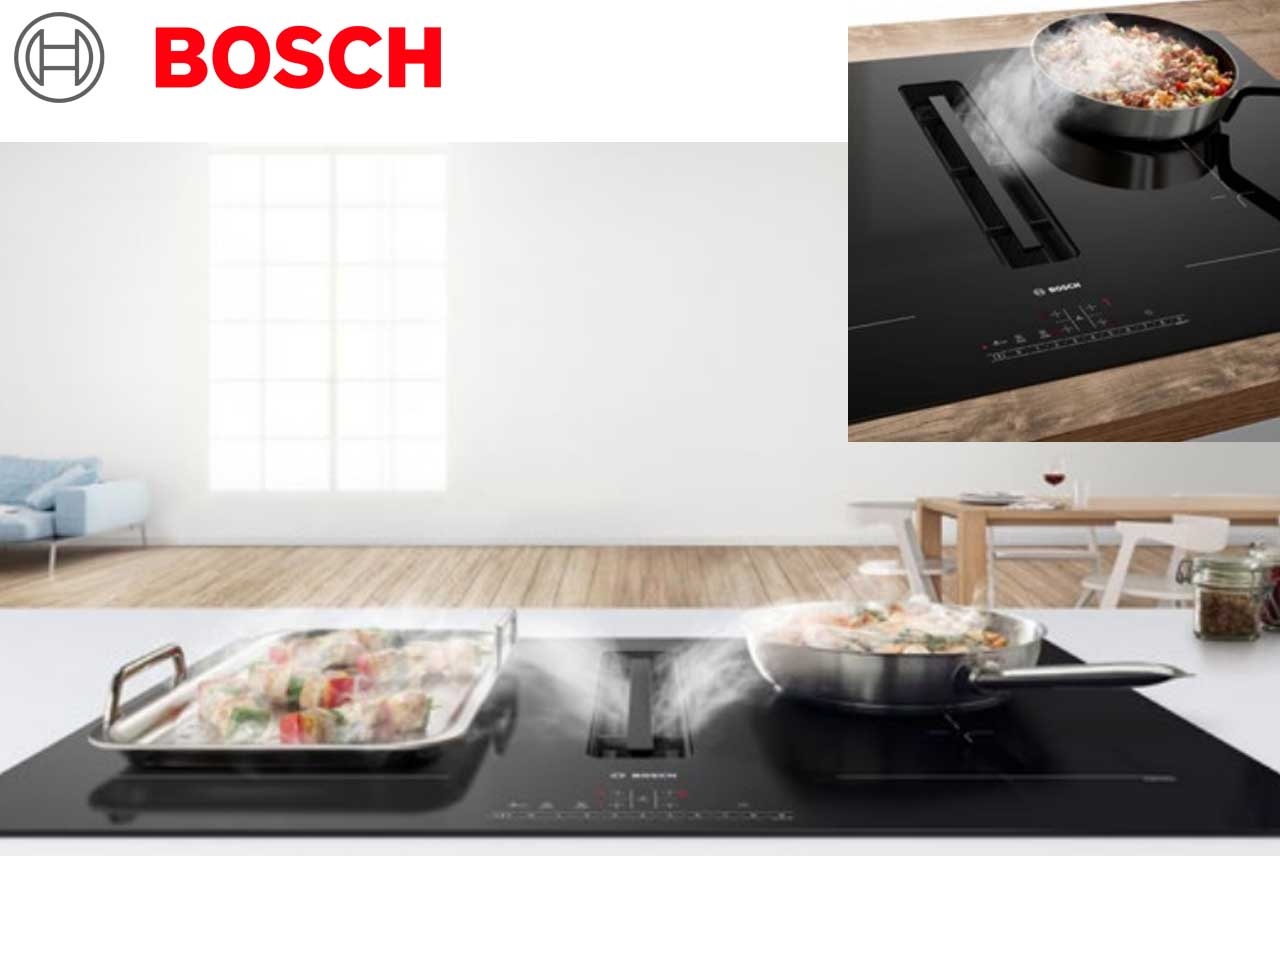 Bosch présente ses nouvelles tables de cuisson aspirantes